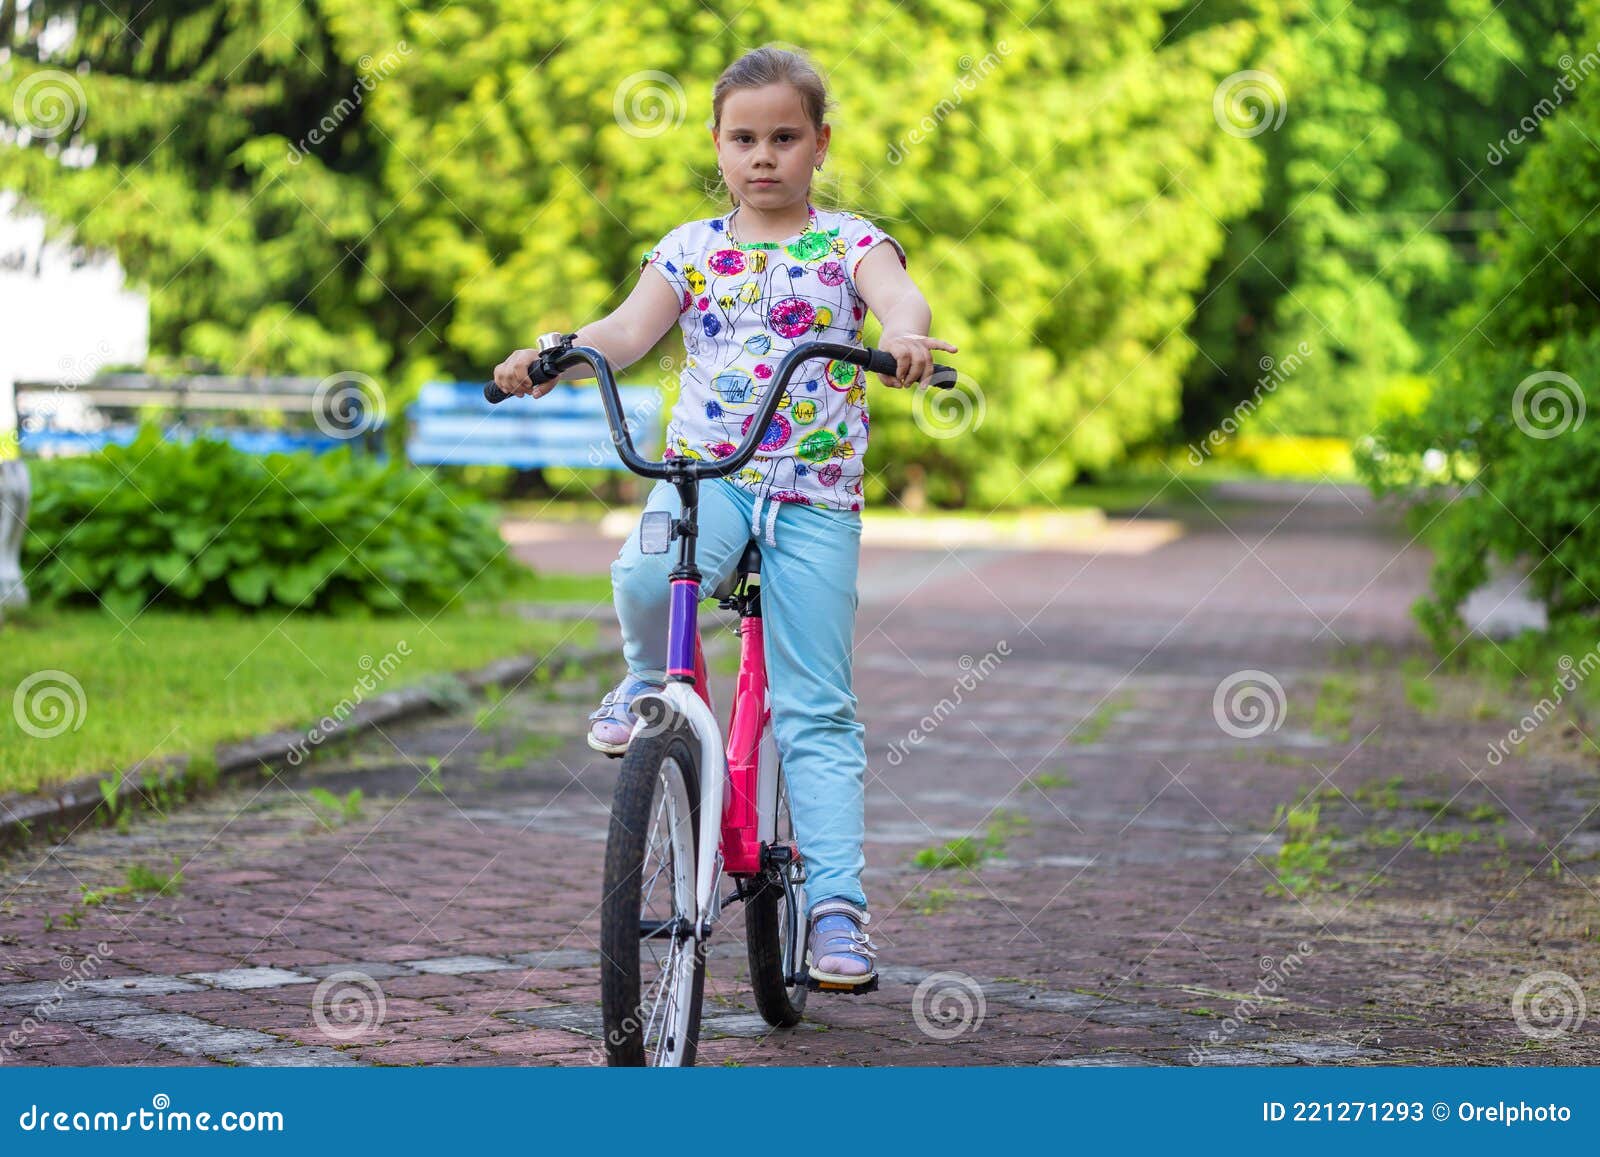 骑车的青春美女图片素材-编号26452442-图行天下